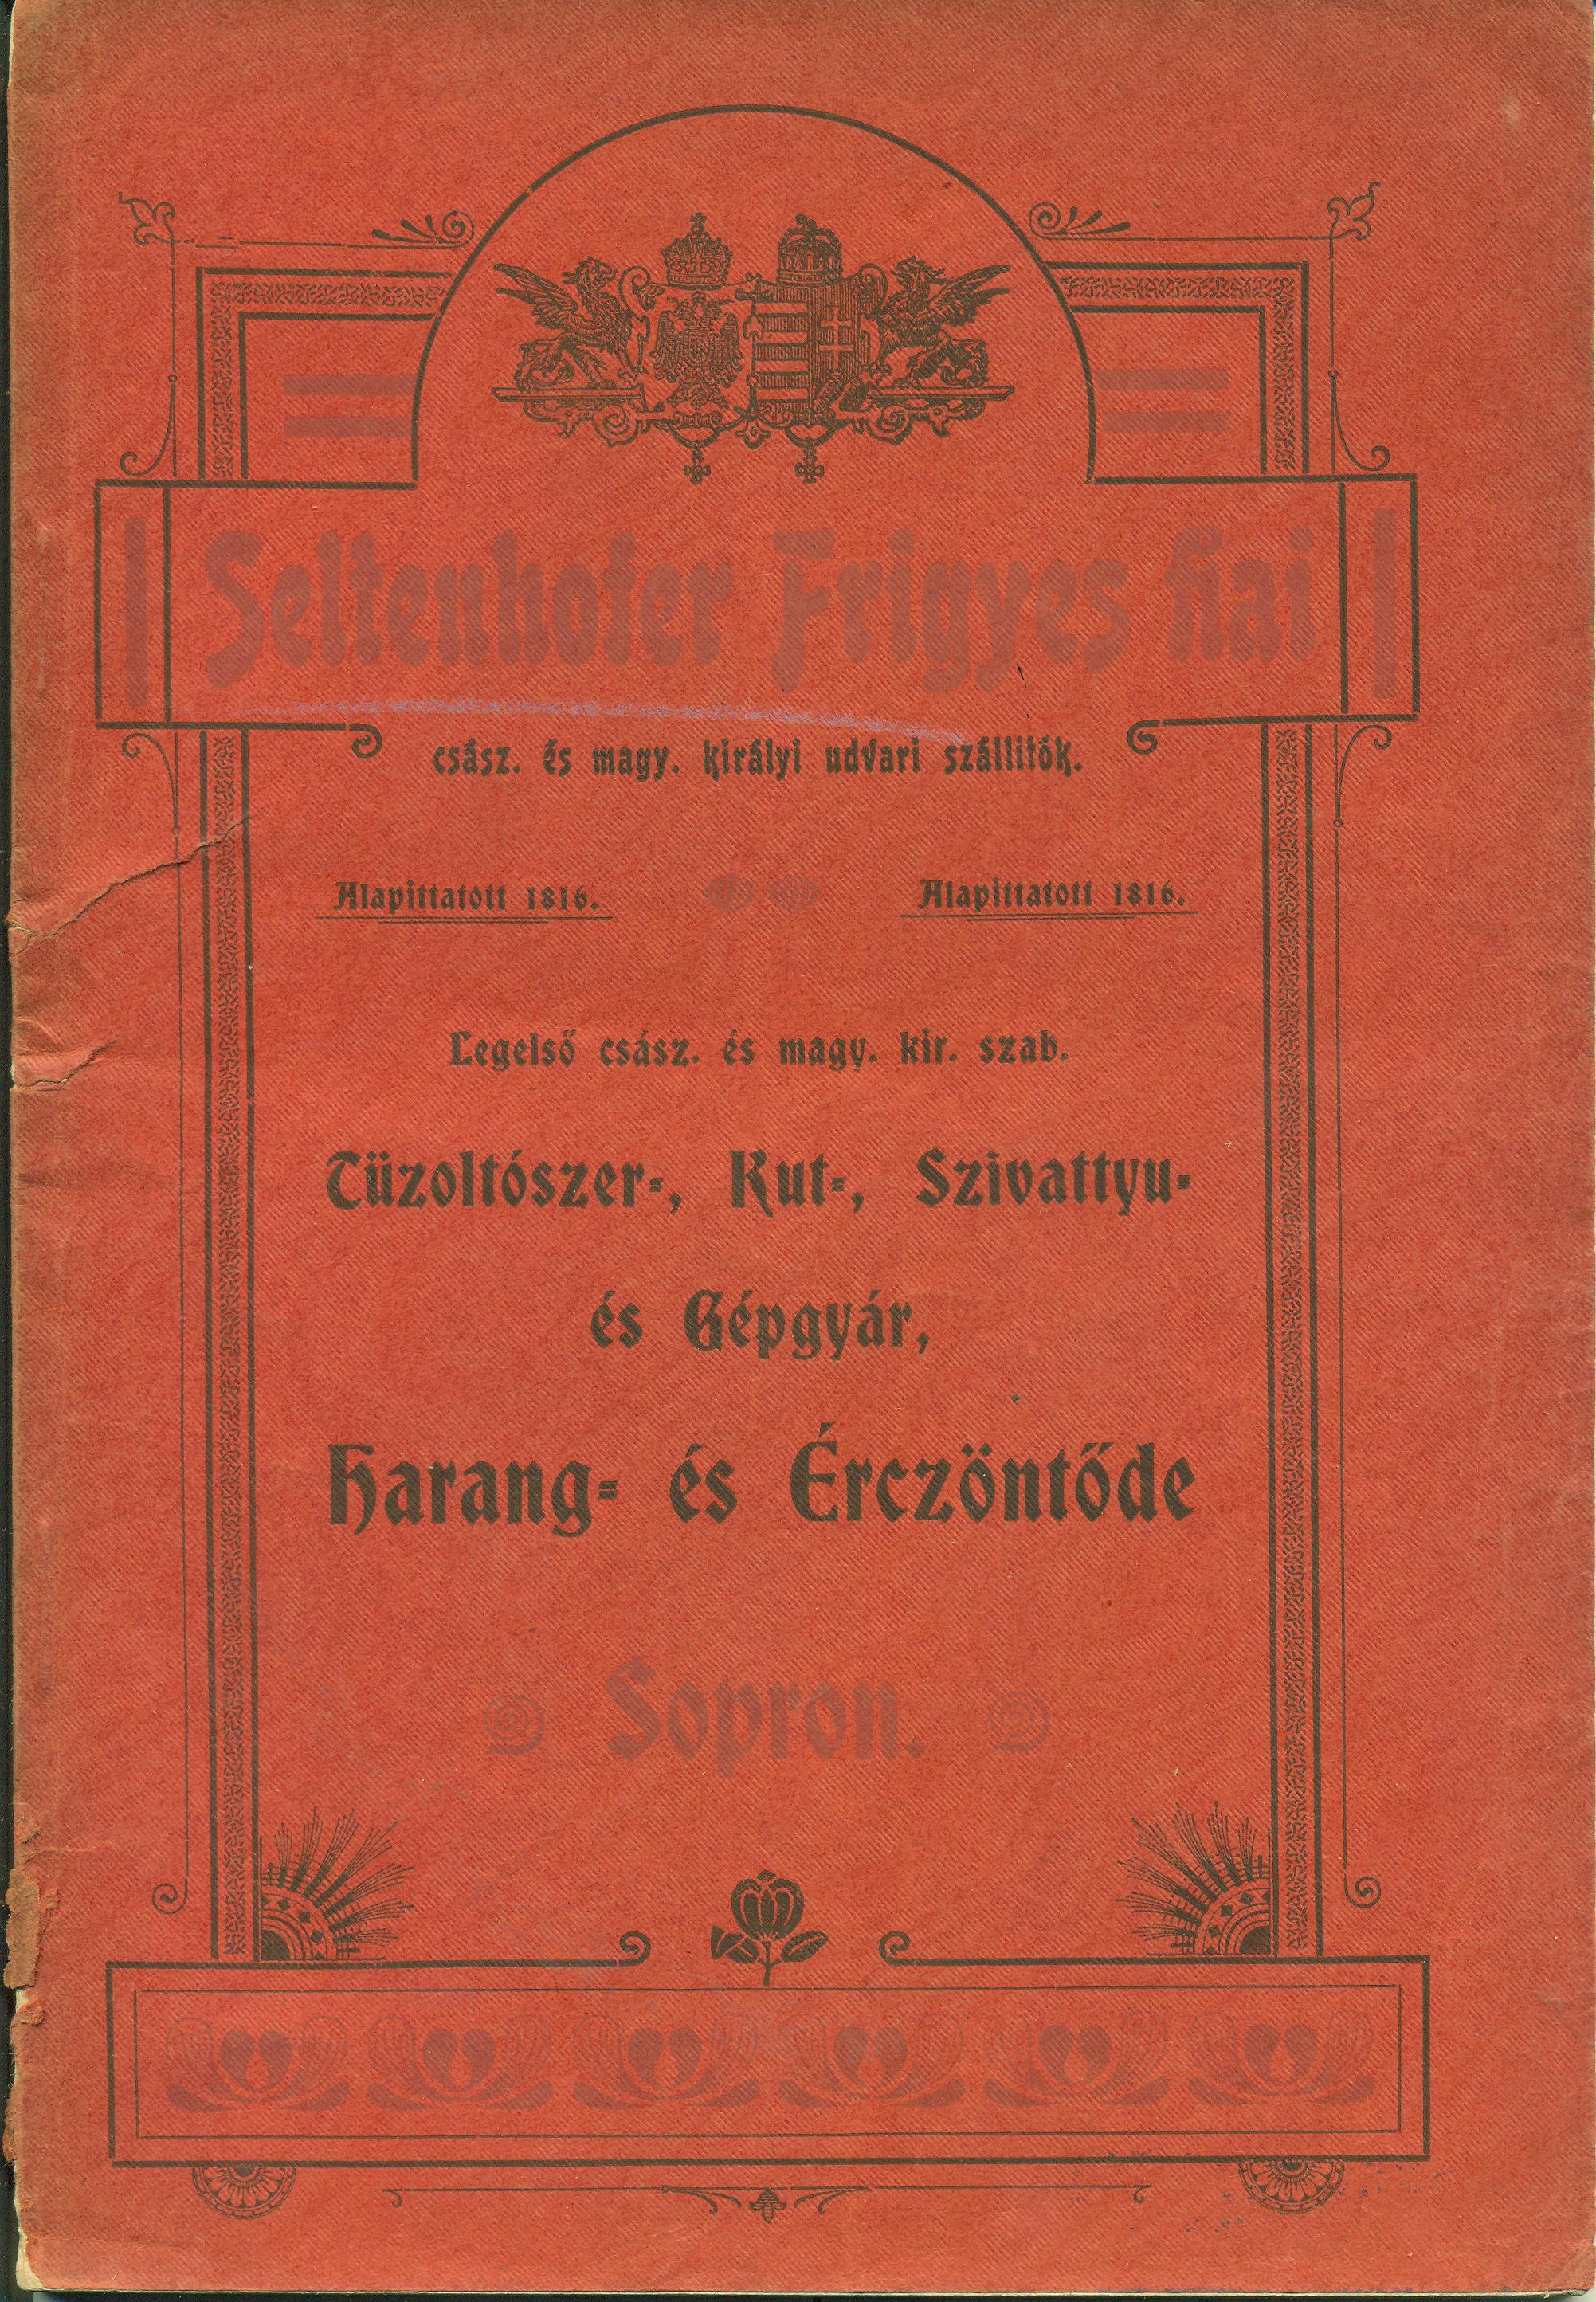 Seltenhofer Frigyes Fiai árjegyzék (Magyar Kereskedelmi és Vendéglátóipari Múzeum CC BY-NC-SA)